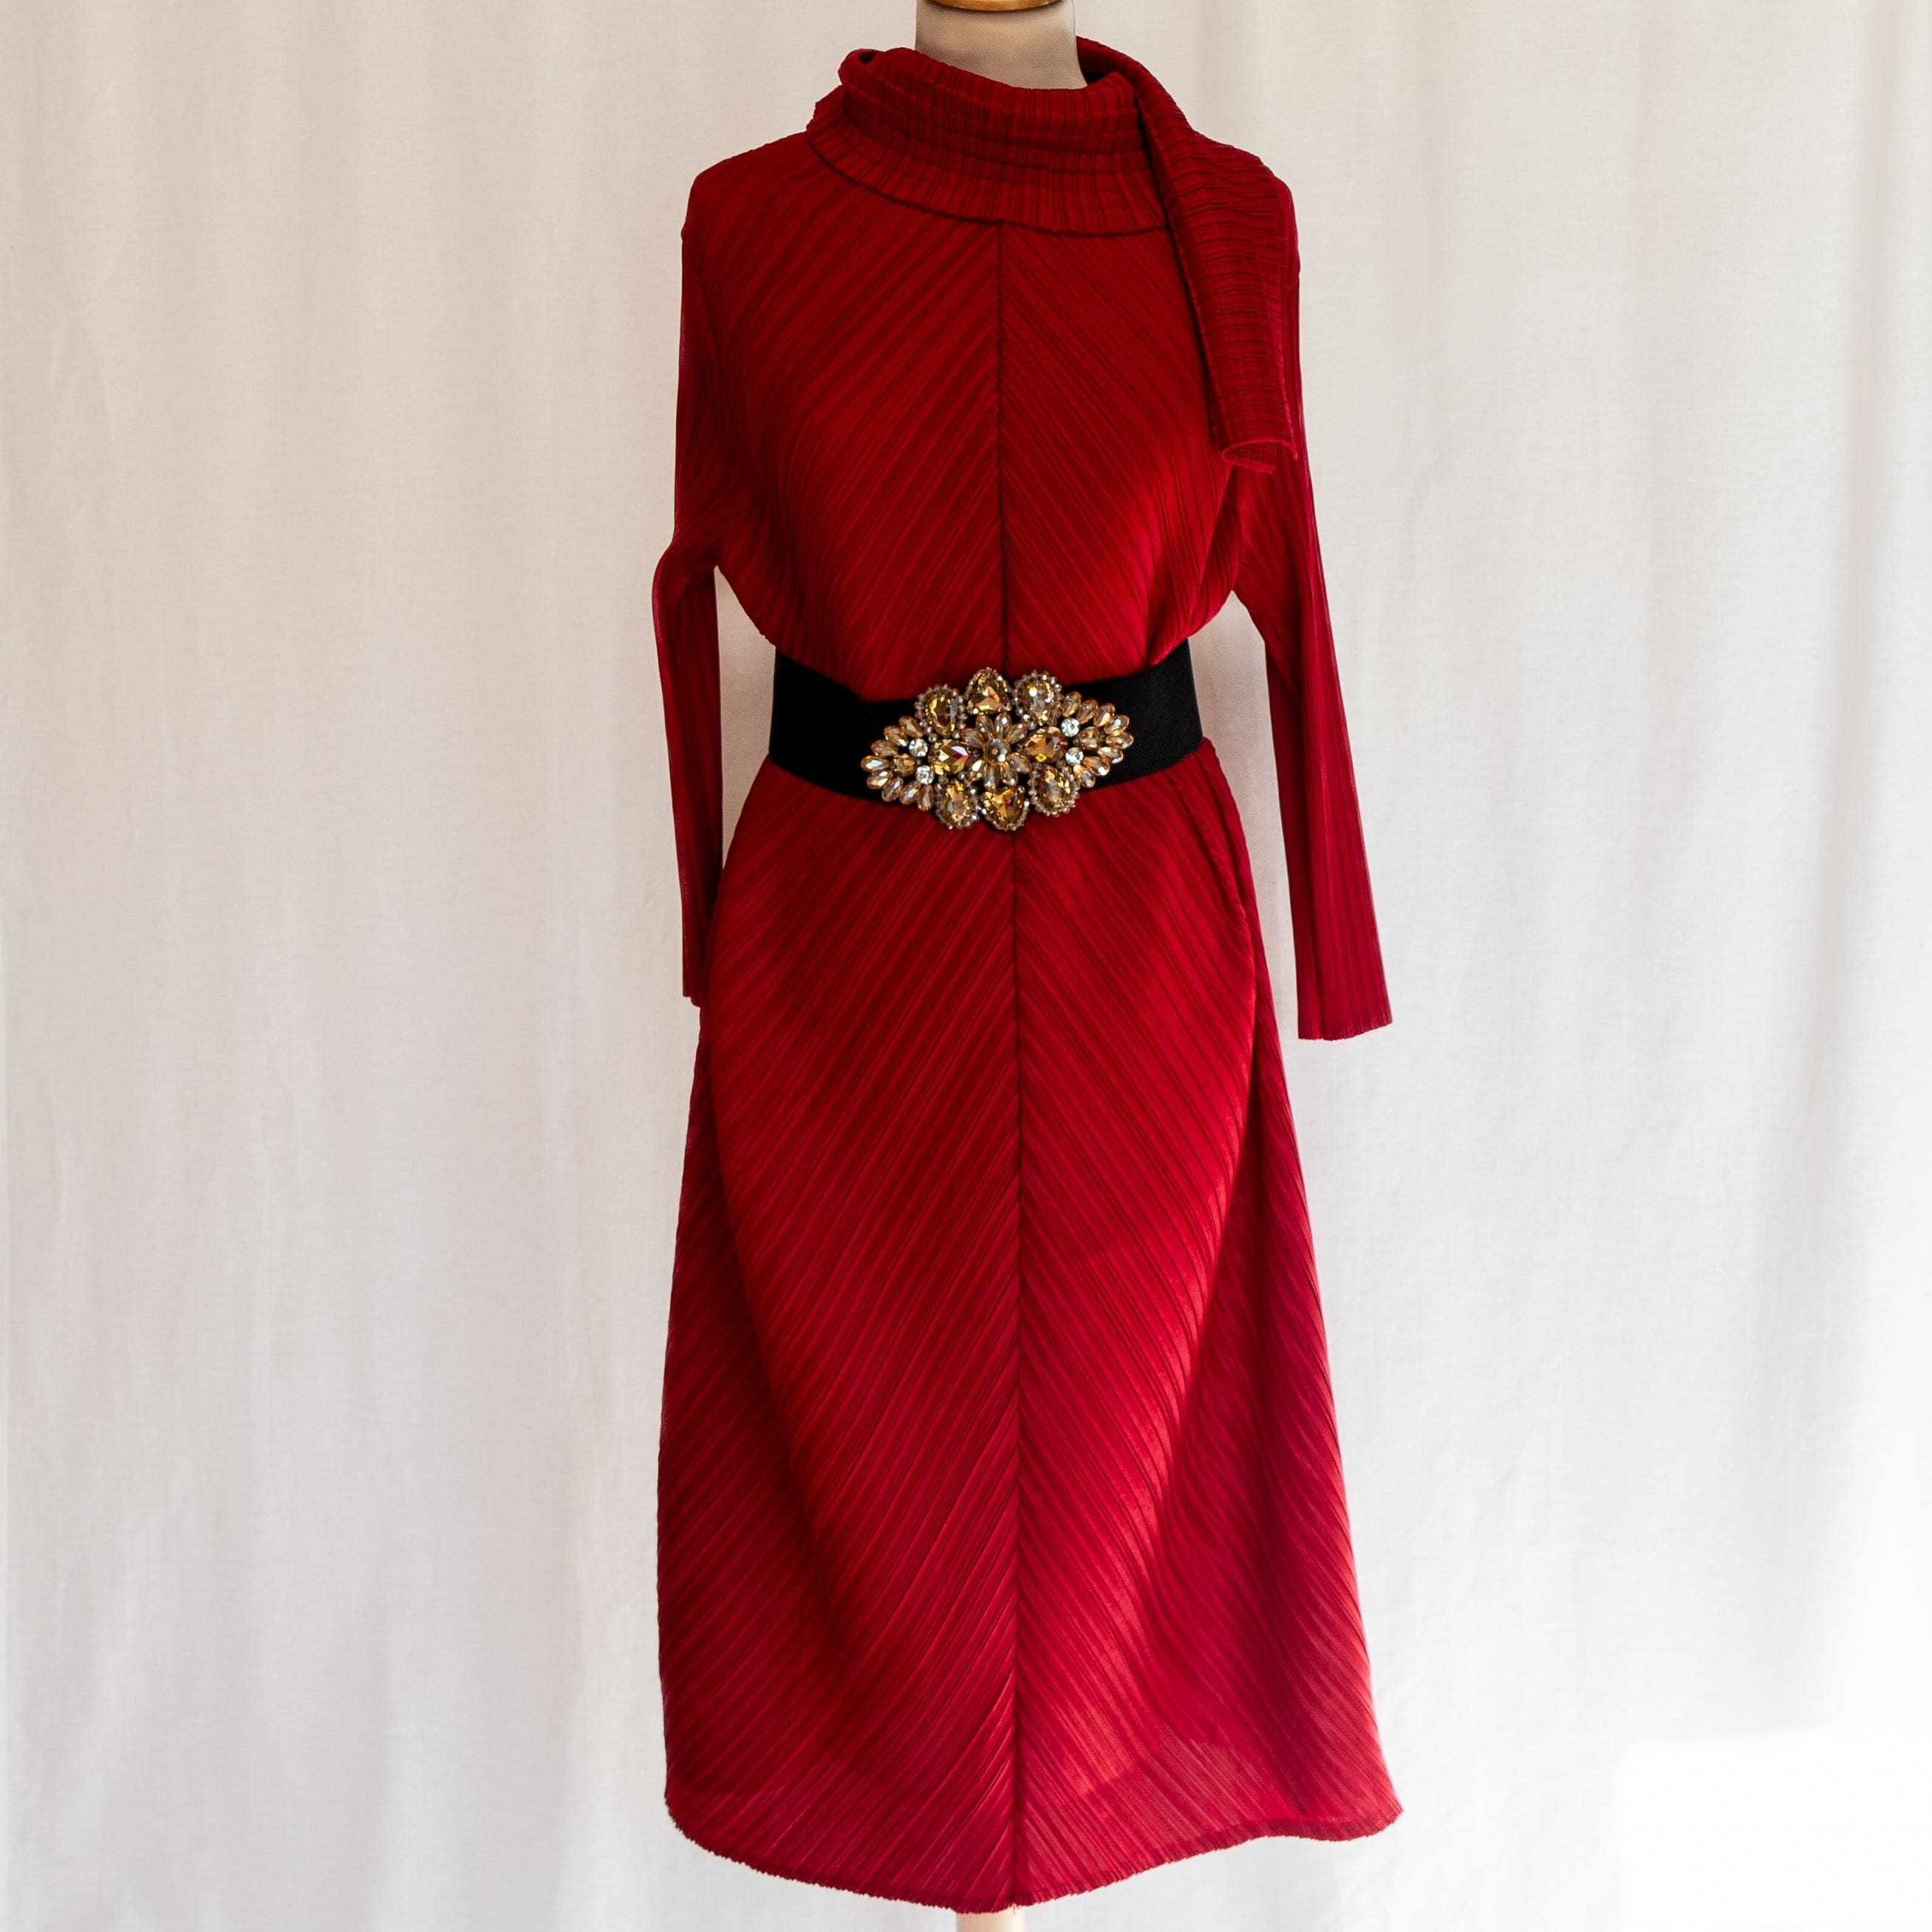 Elisabeth Exclusivité Dress - Red - Dresses